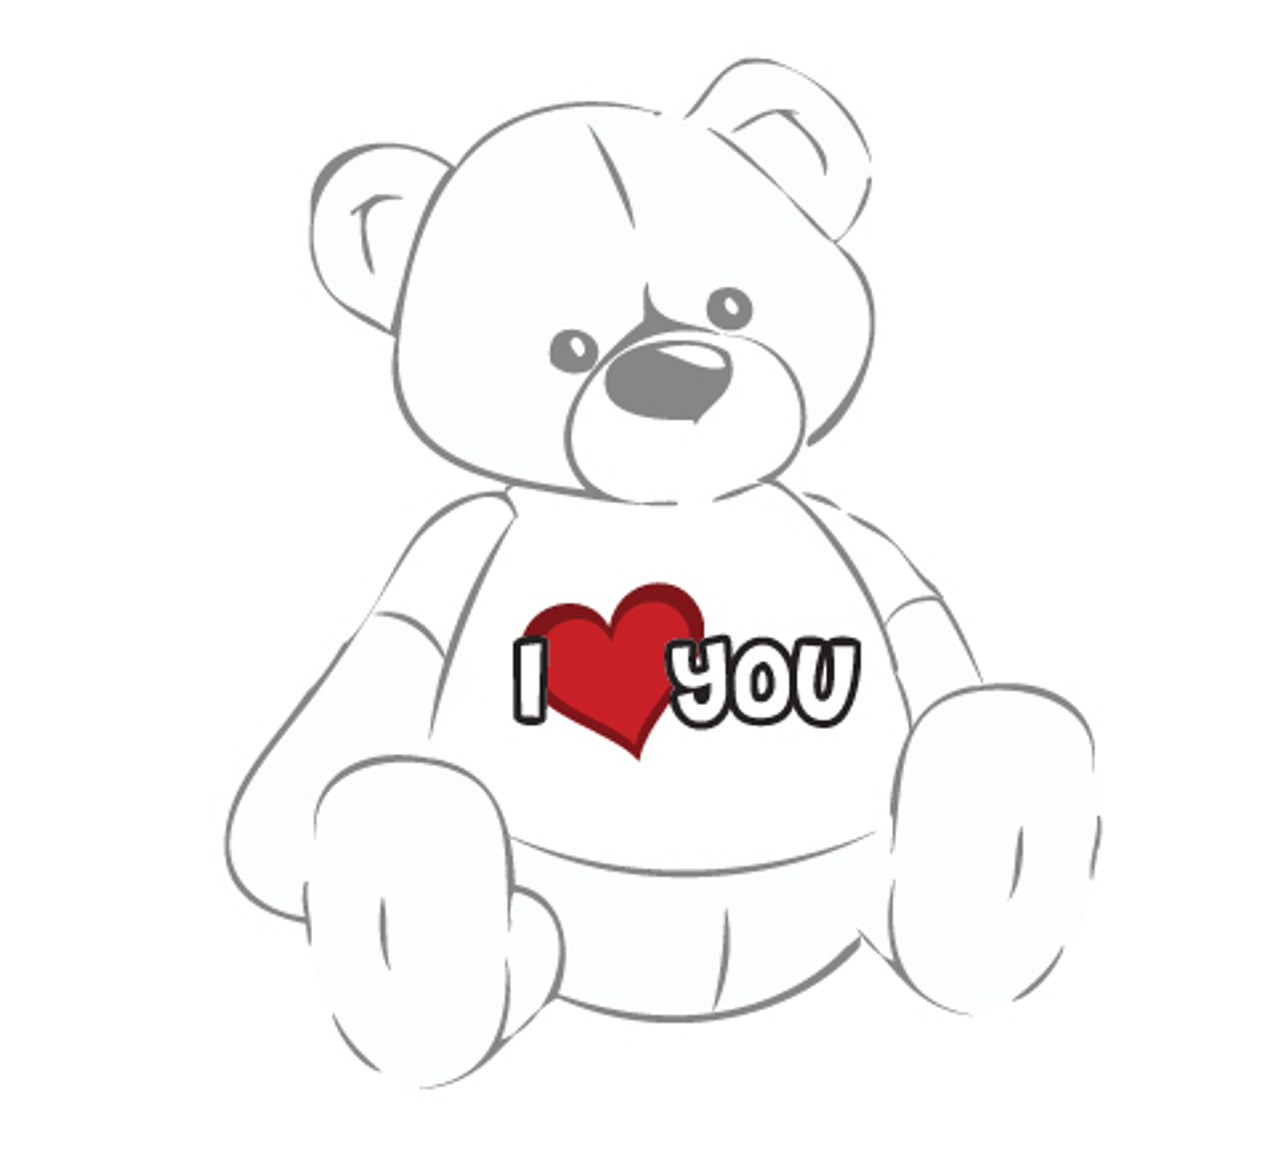 Giant Teddy Bear with I Love You Heart